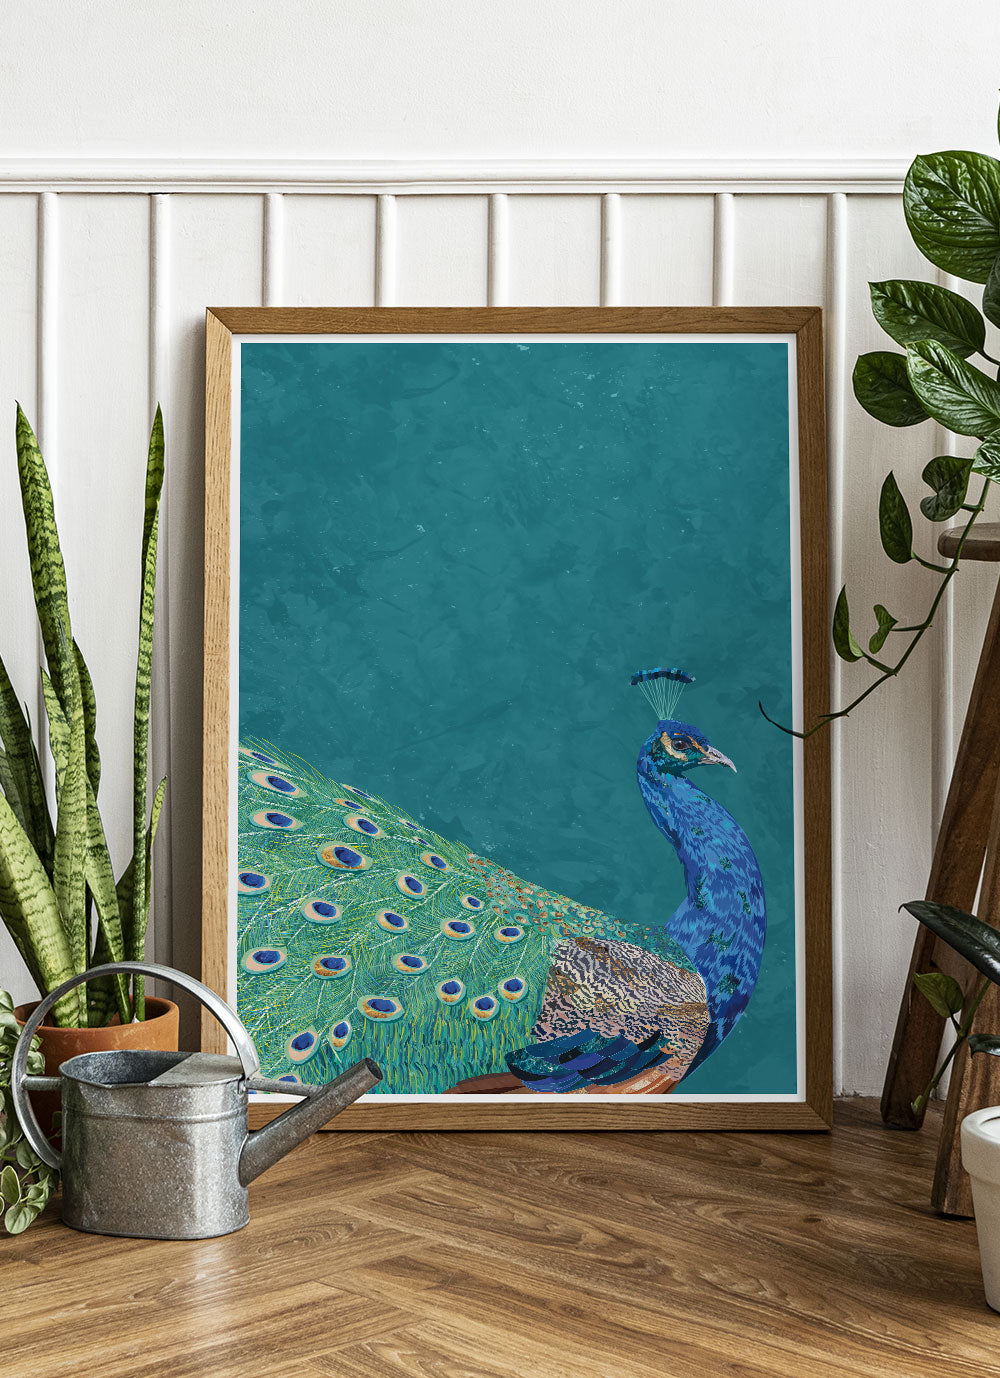 Peacock Art Print by Sarah Manovski ina treny room with house plants